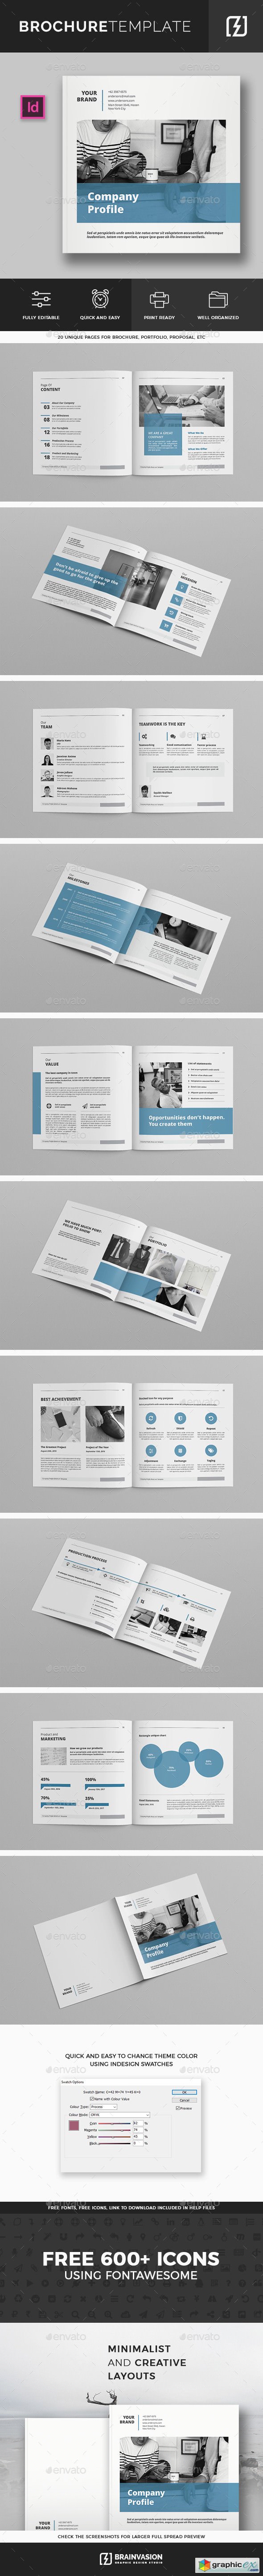 Square Company Profile Brochure Template